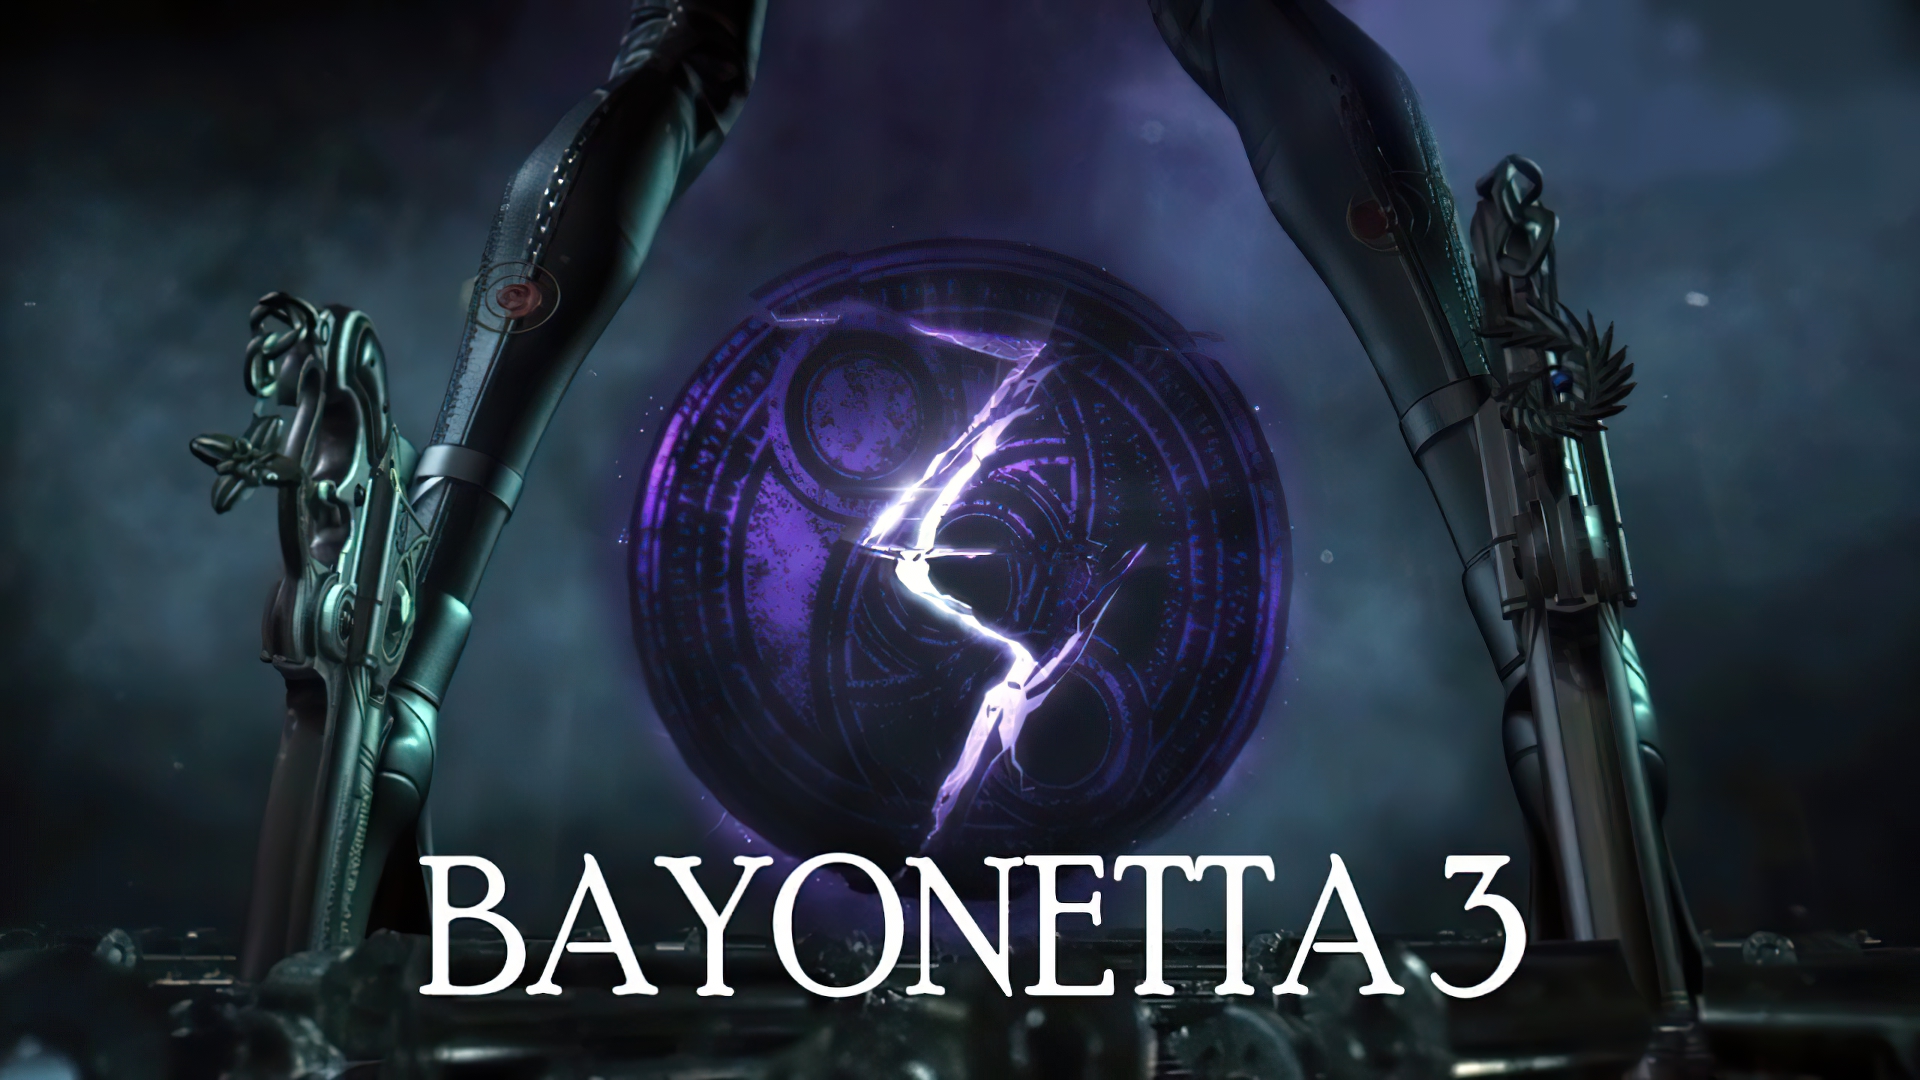 Bayonetta 3' Development is 'Going Well' Despite E3 Absence